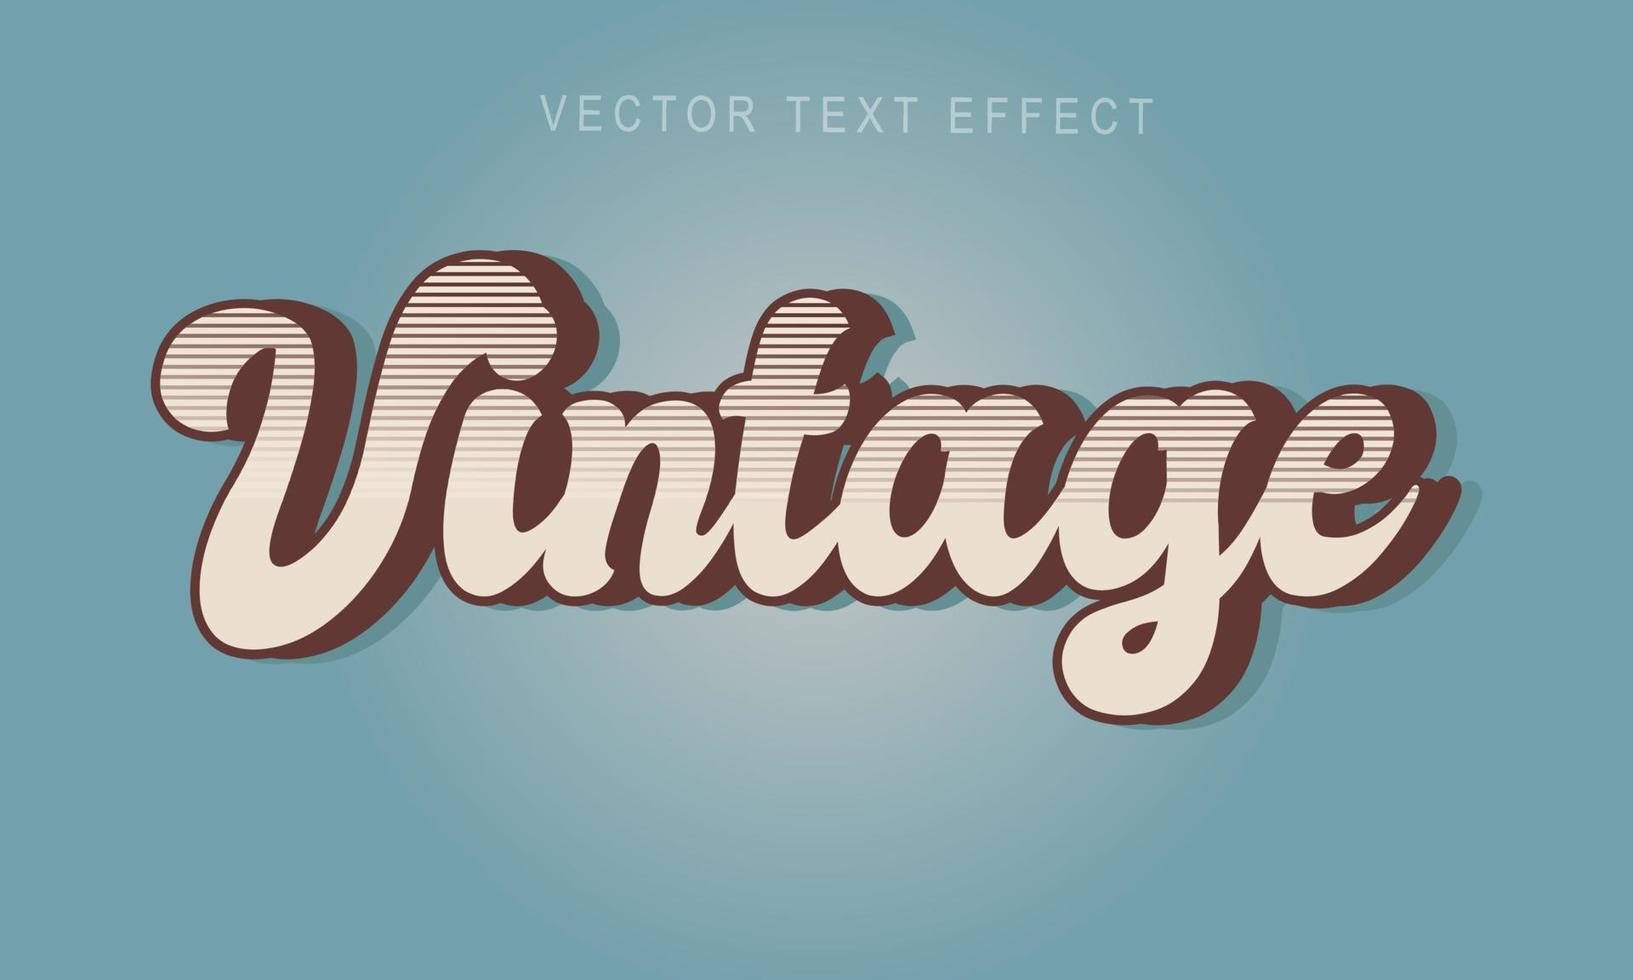 estilo de texto retro, vintage editable de los años 70 y 80, retro vintage y clásico vector